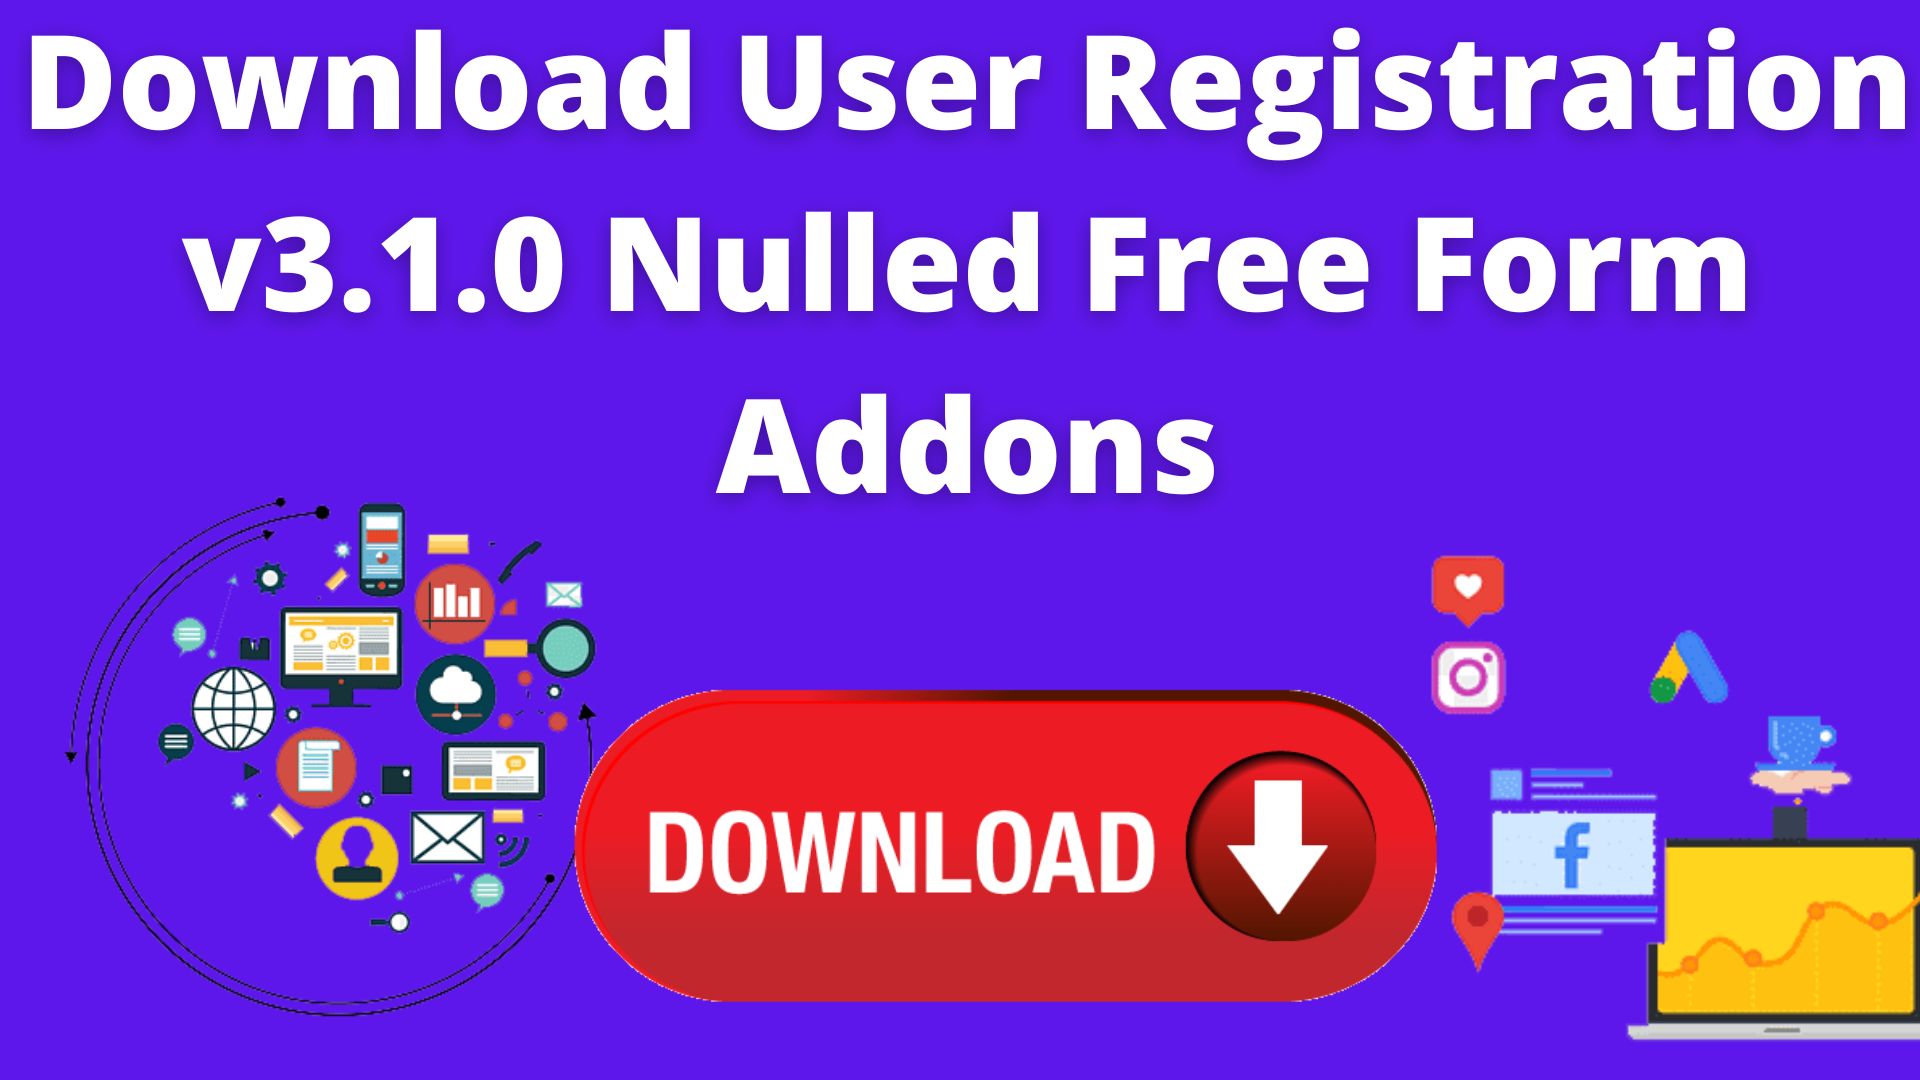 Download user registration v3. 1. 0 nulled free form addons